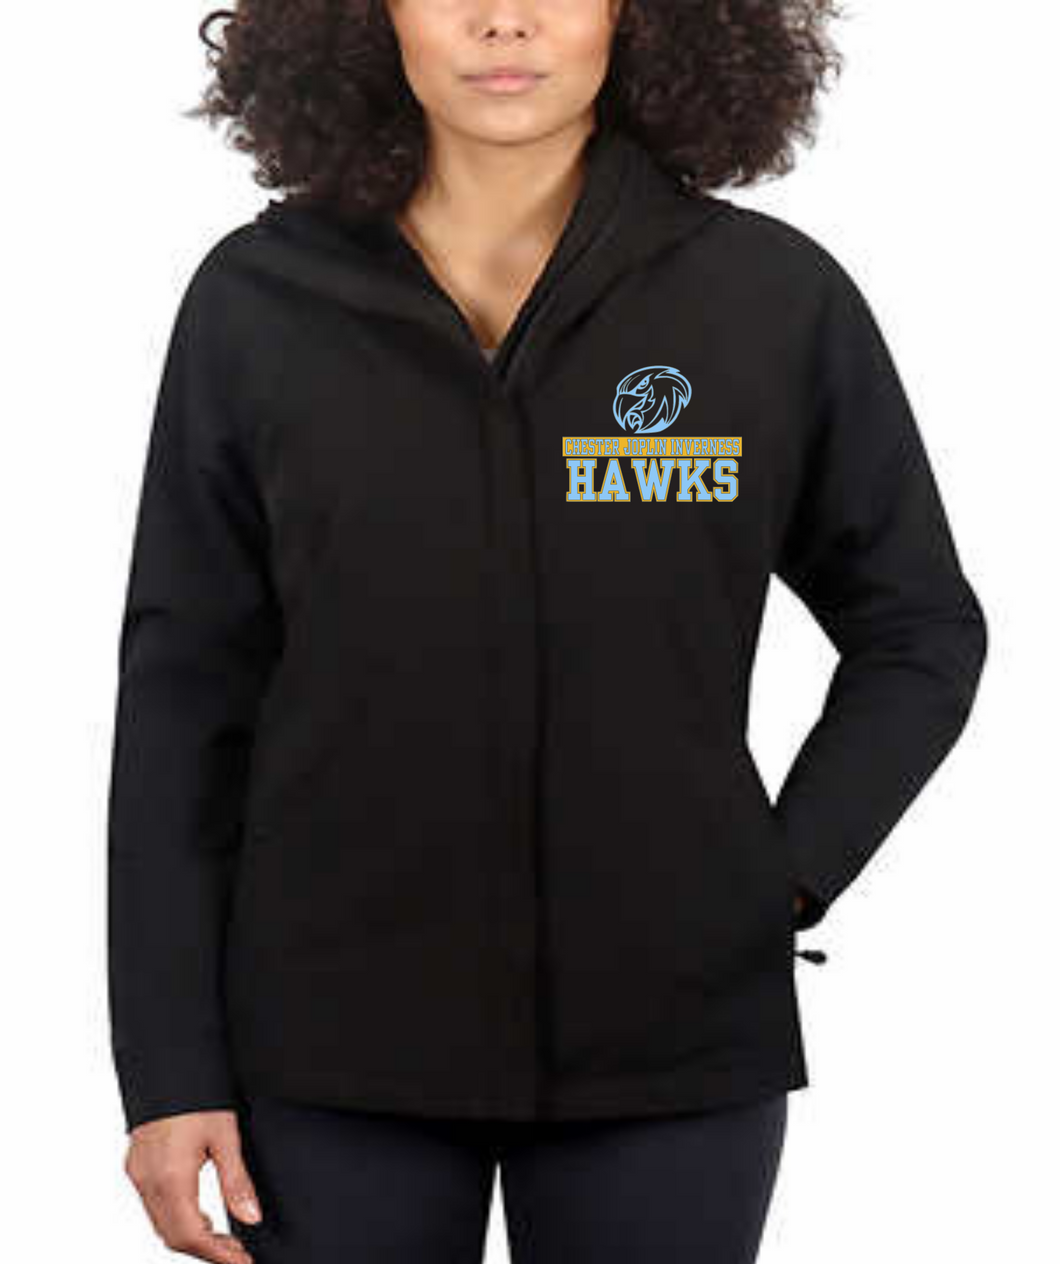 CJI Hawks Women's Softshell Jacket